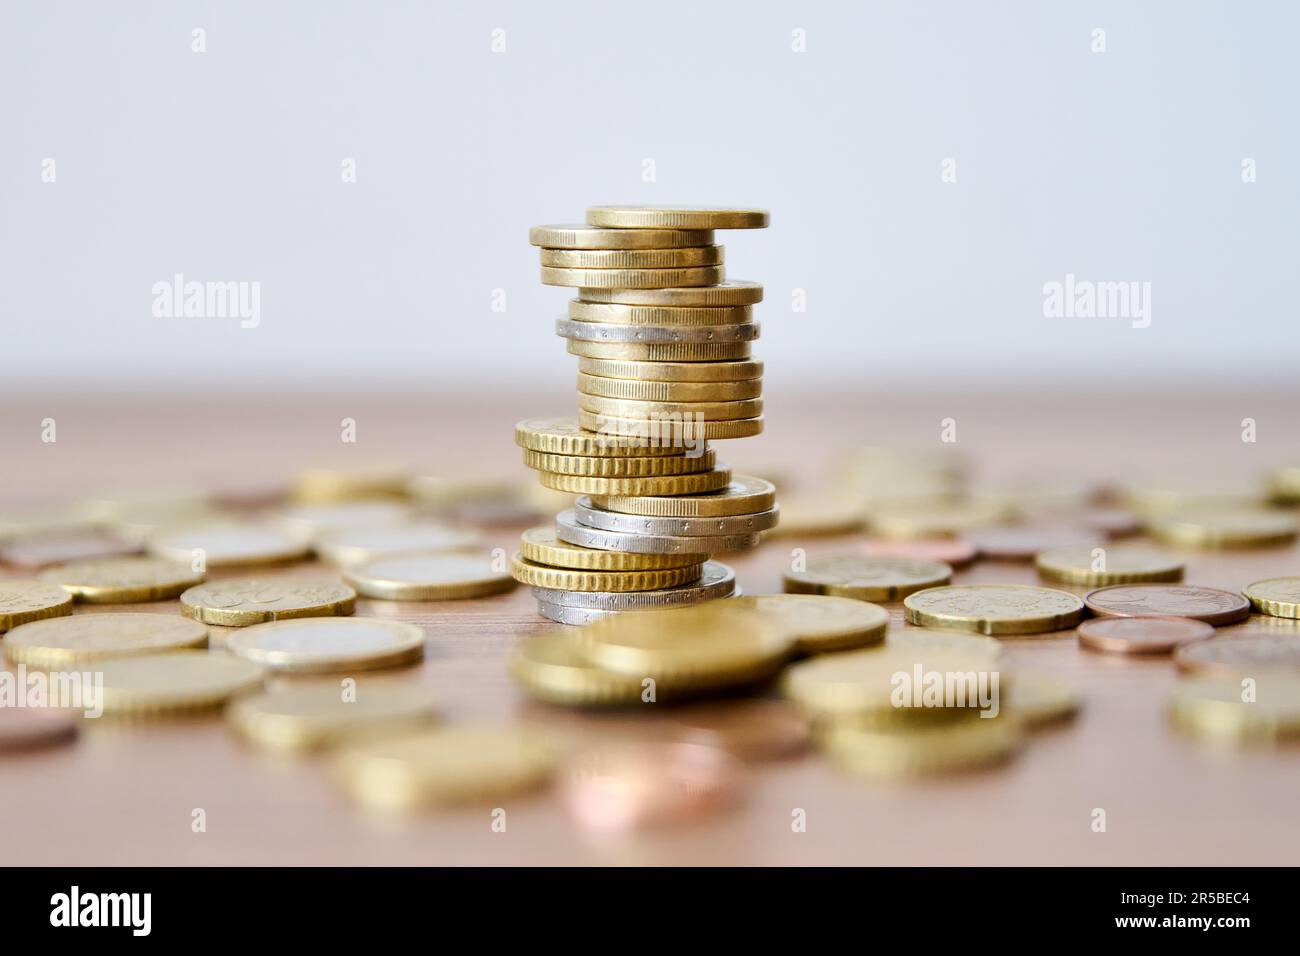 Un tas de pièces de monnaie sur une table en bois avec une faible profondeur de champ Banque D'Images